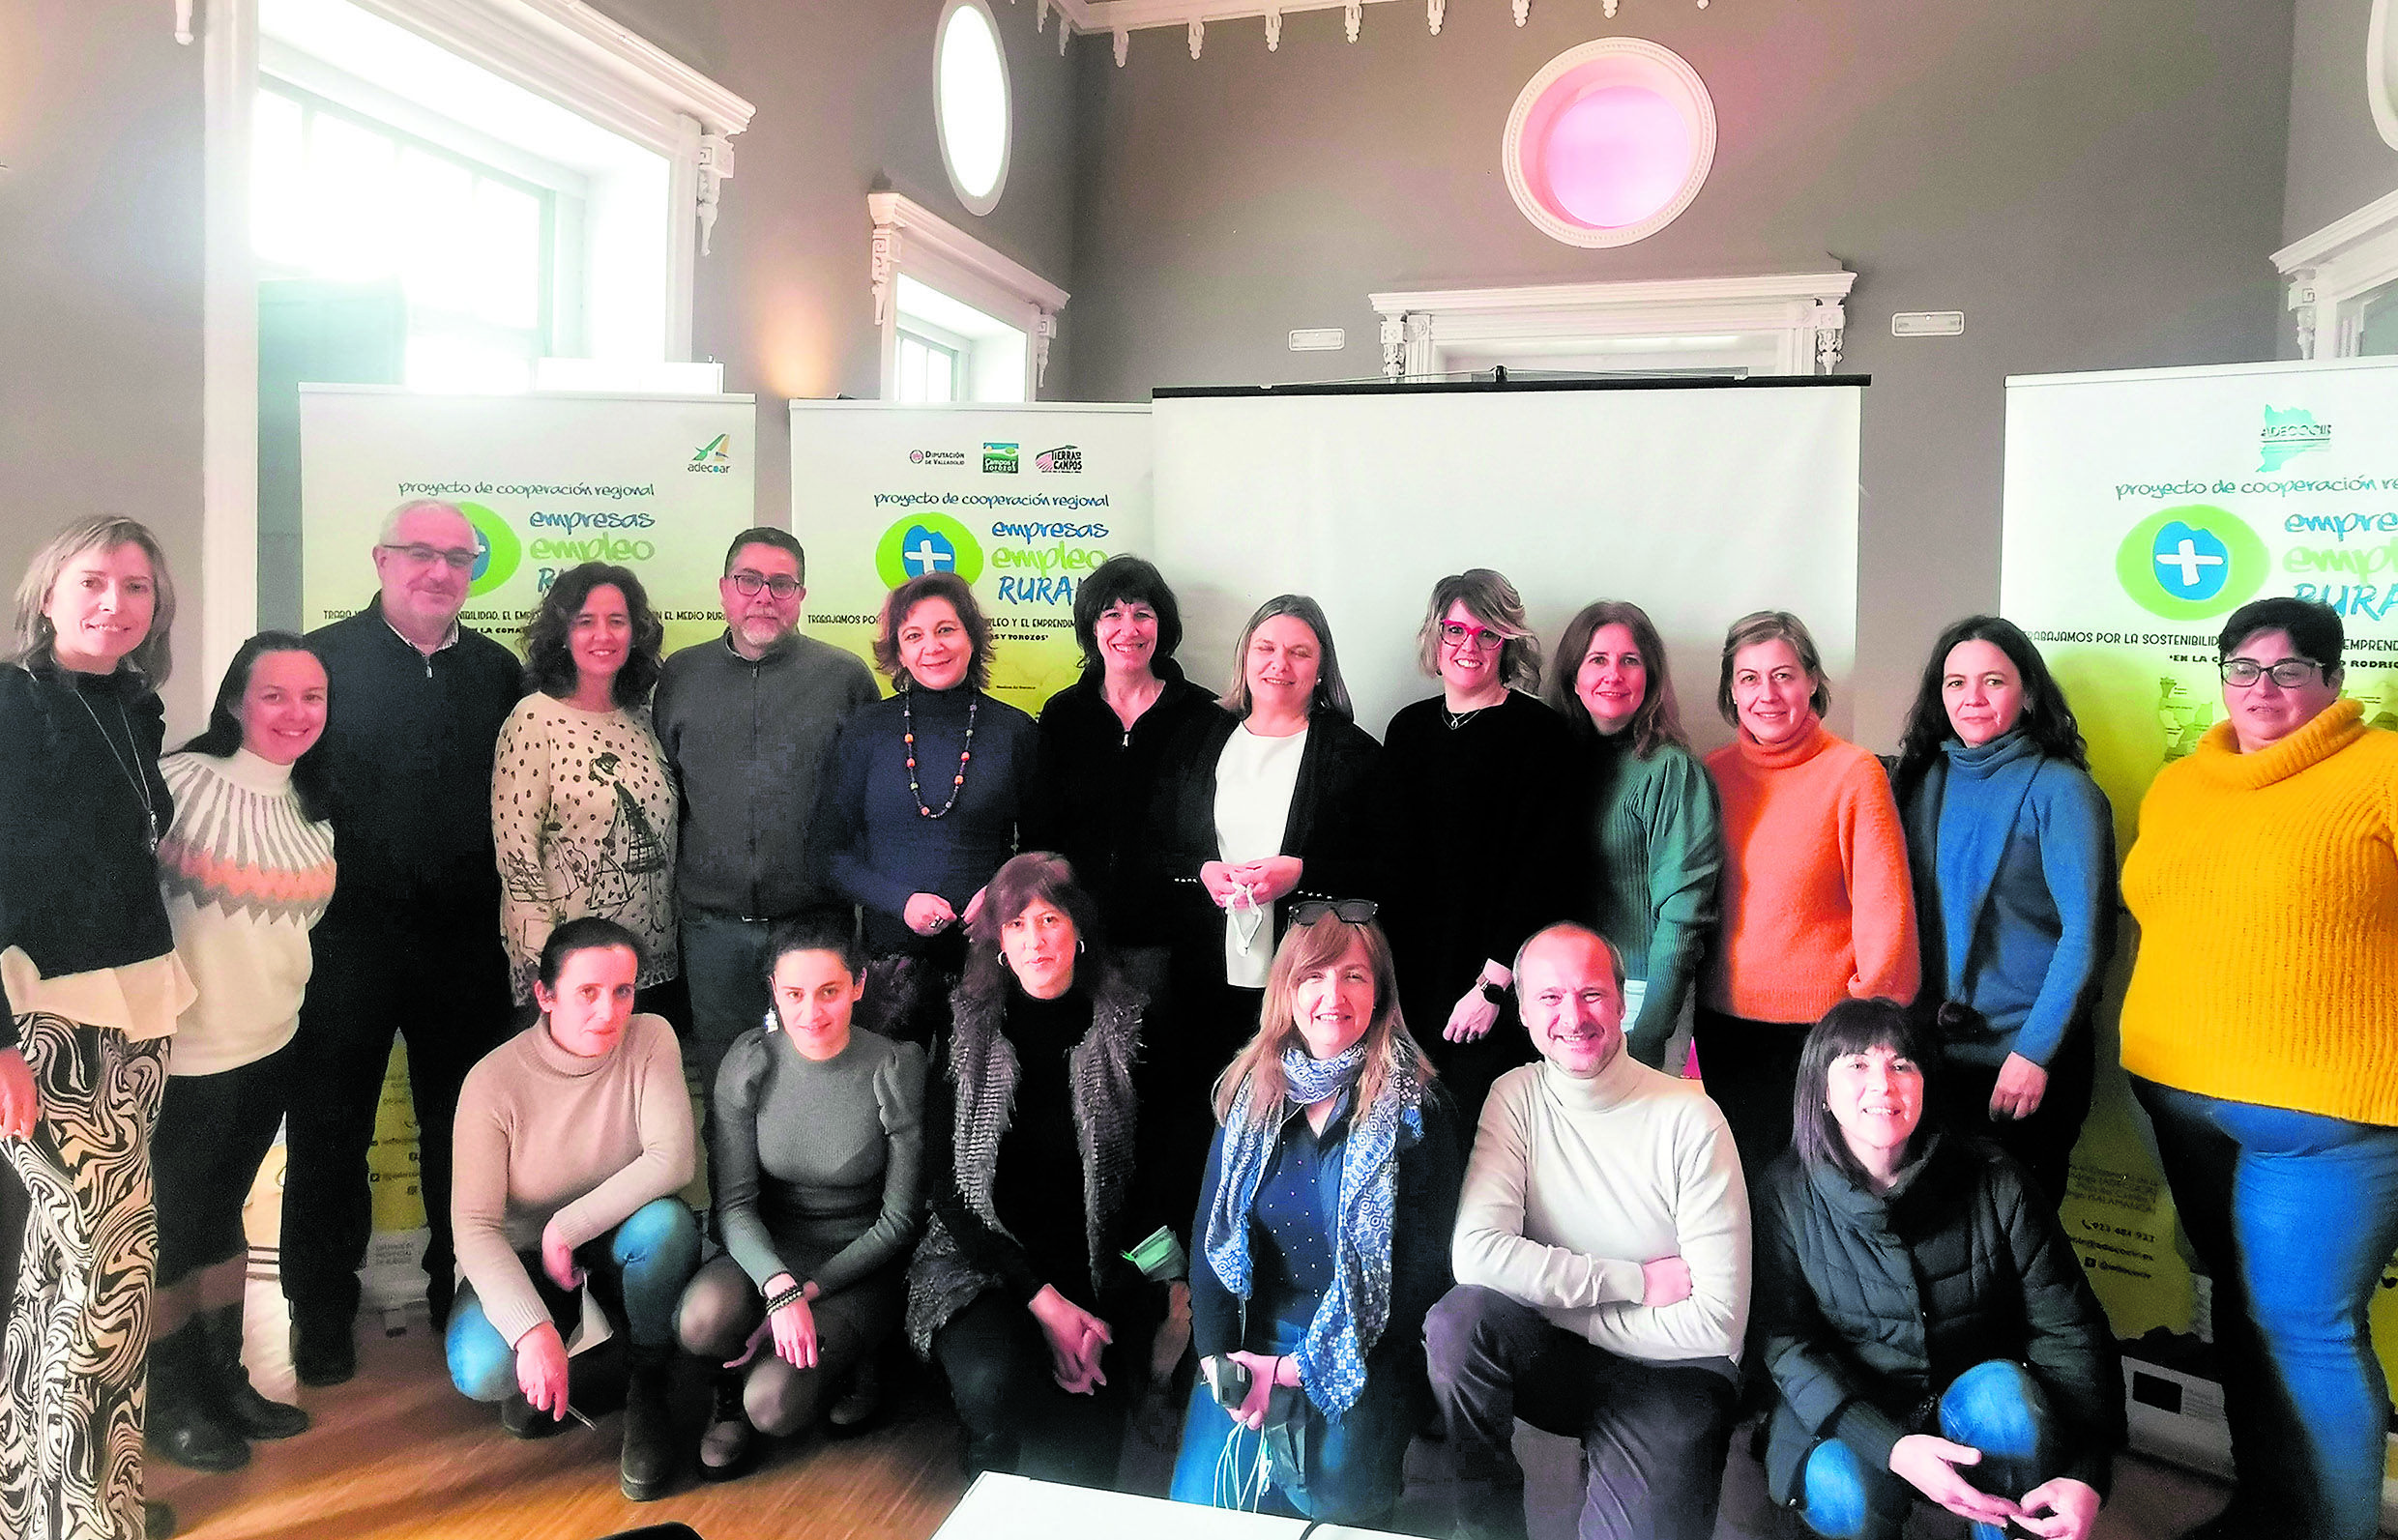 ‘+Empresas +Empleo +Rural’ integra a once Grupos de Acción Local (GAL) de Castilla y León. | L.N.C.